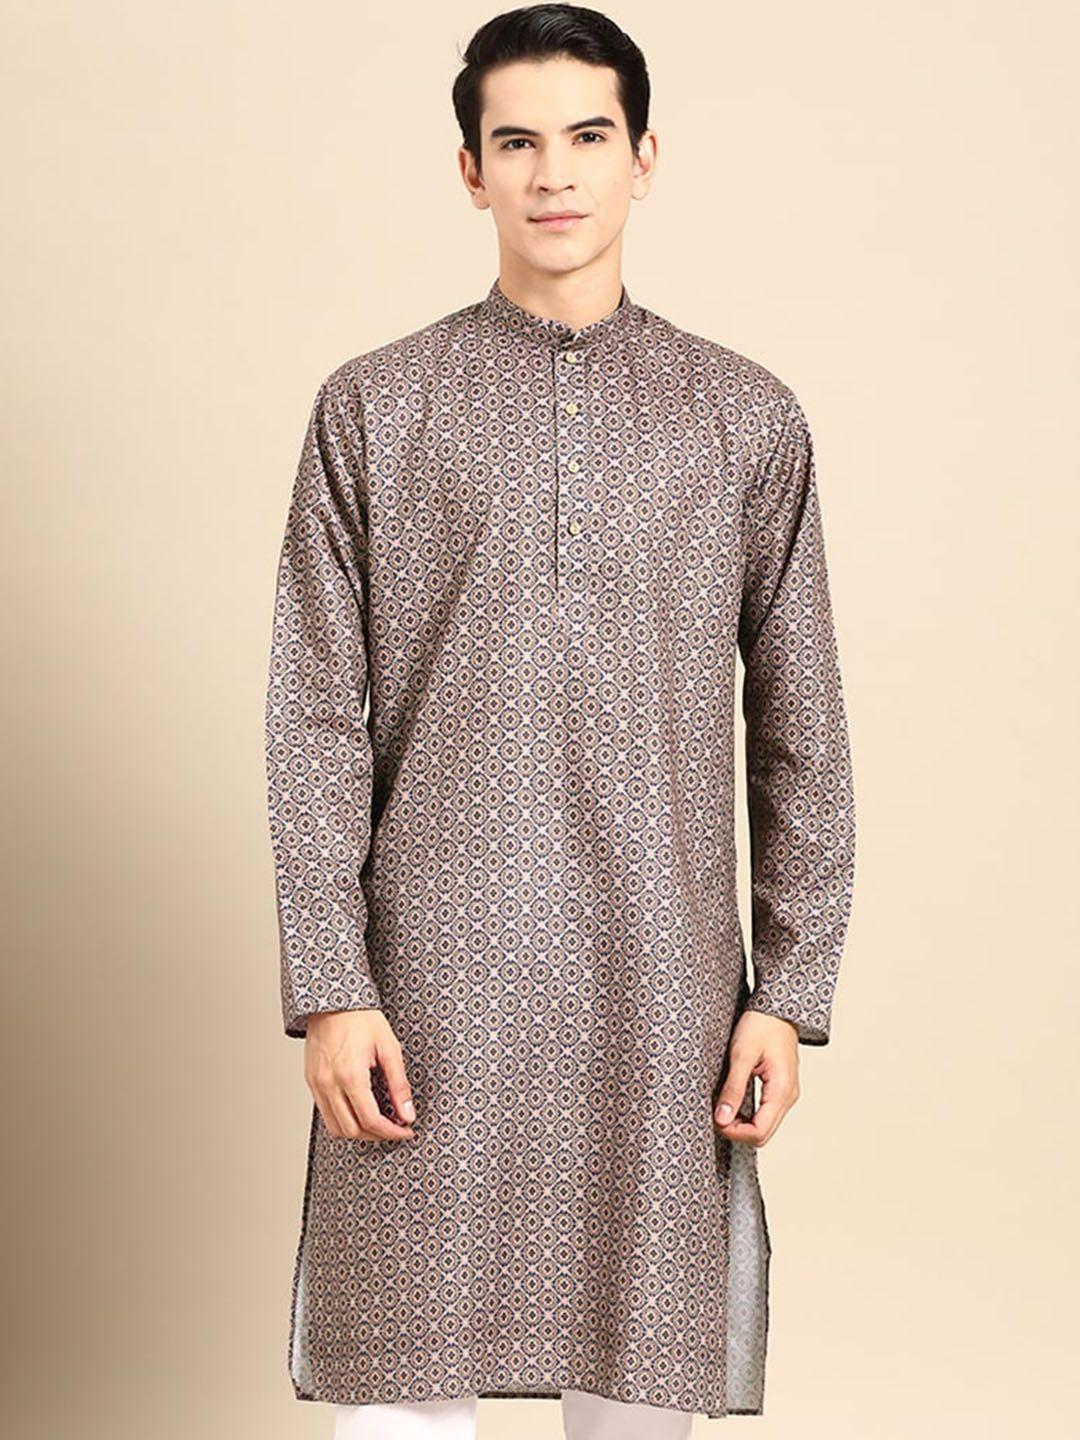 manq ethnic motifs printed mandarin collar straight kurta